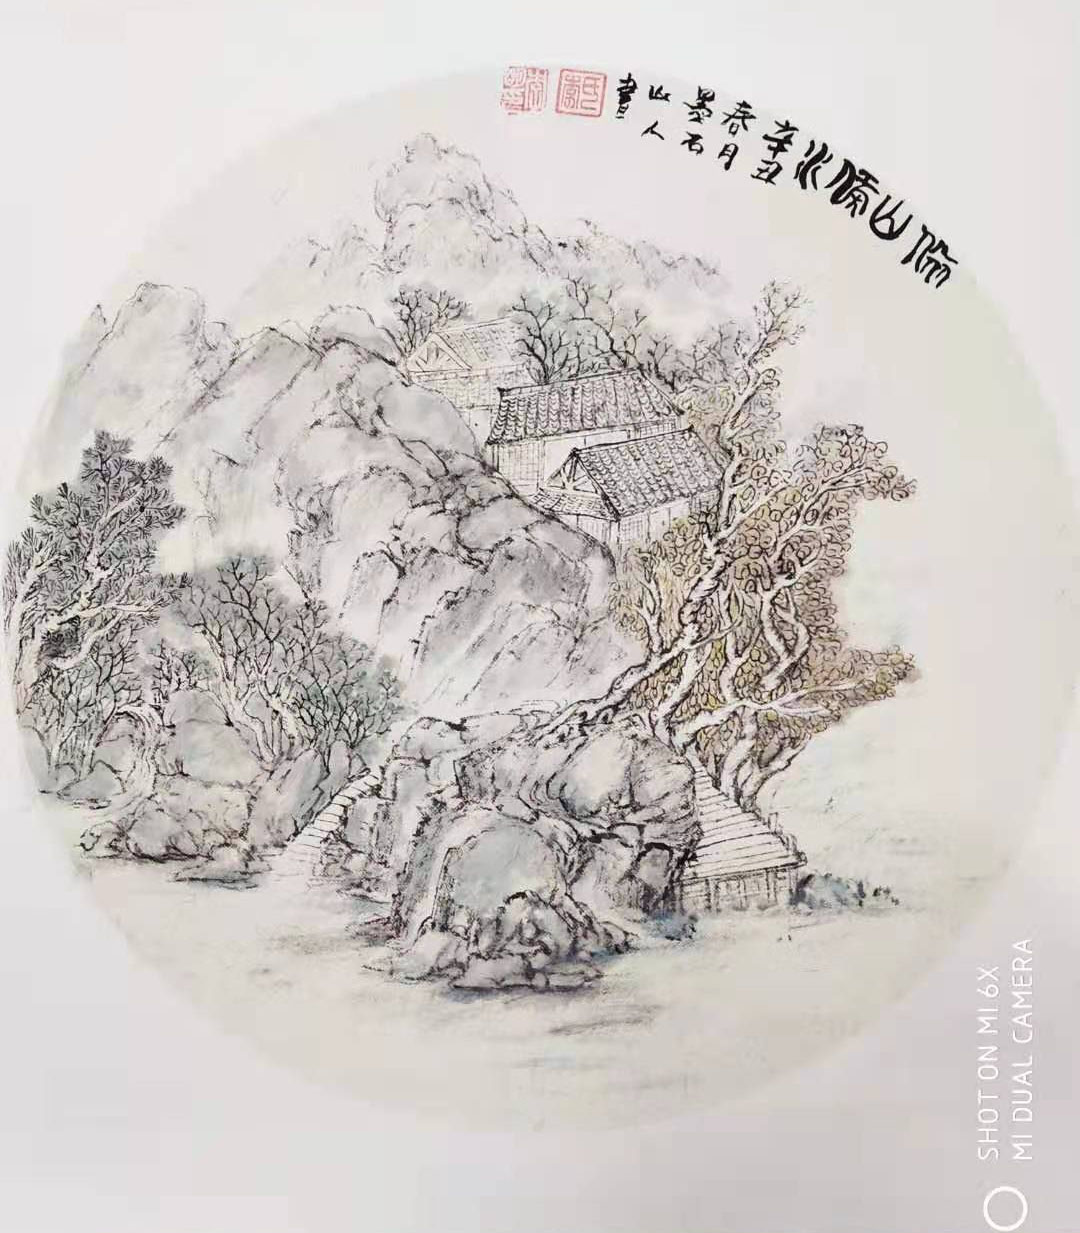 中国大众文化学会名人书画艺术发展委员会——李明